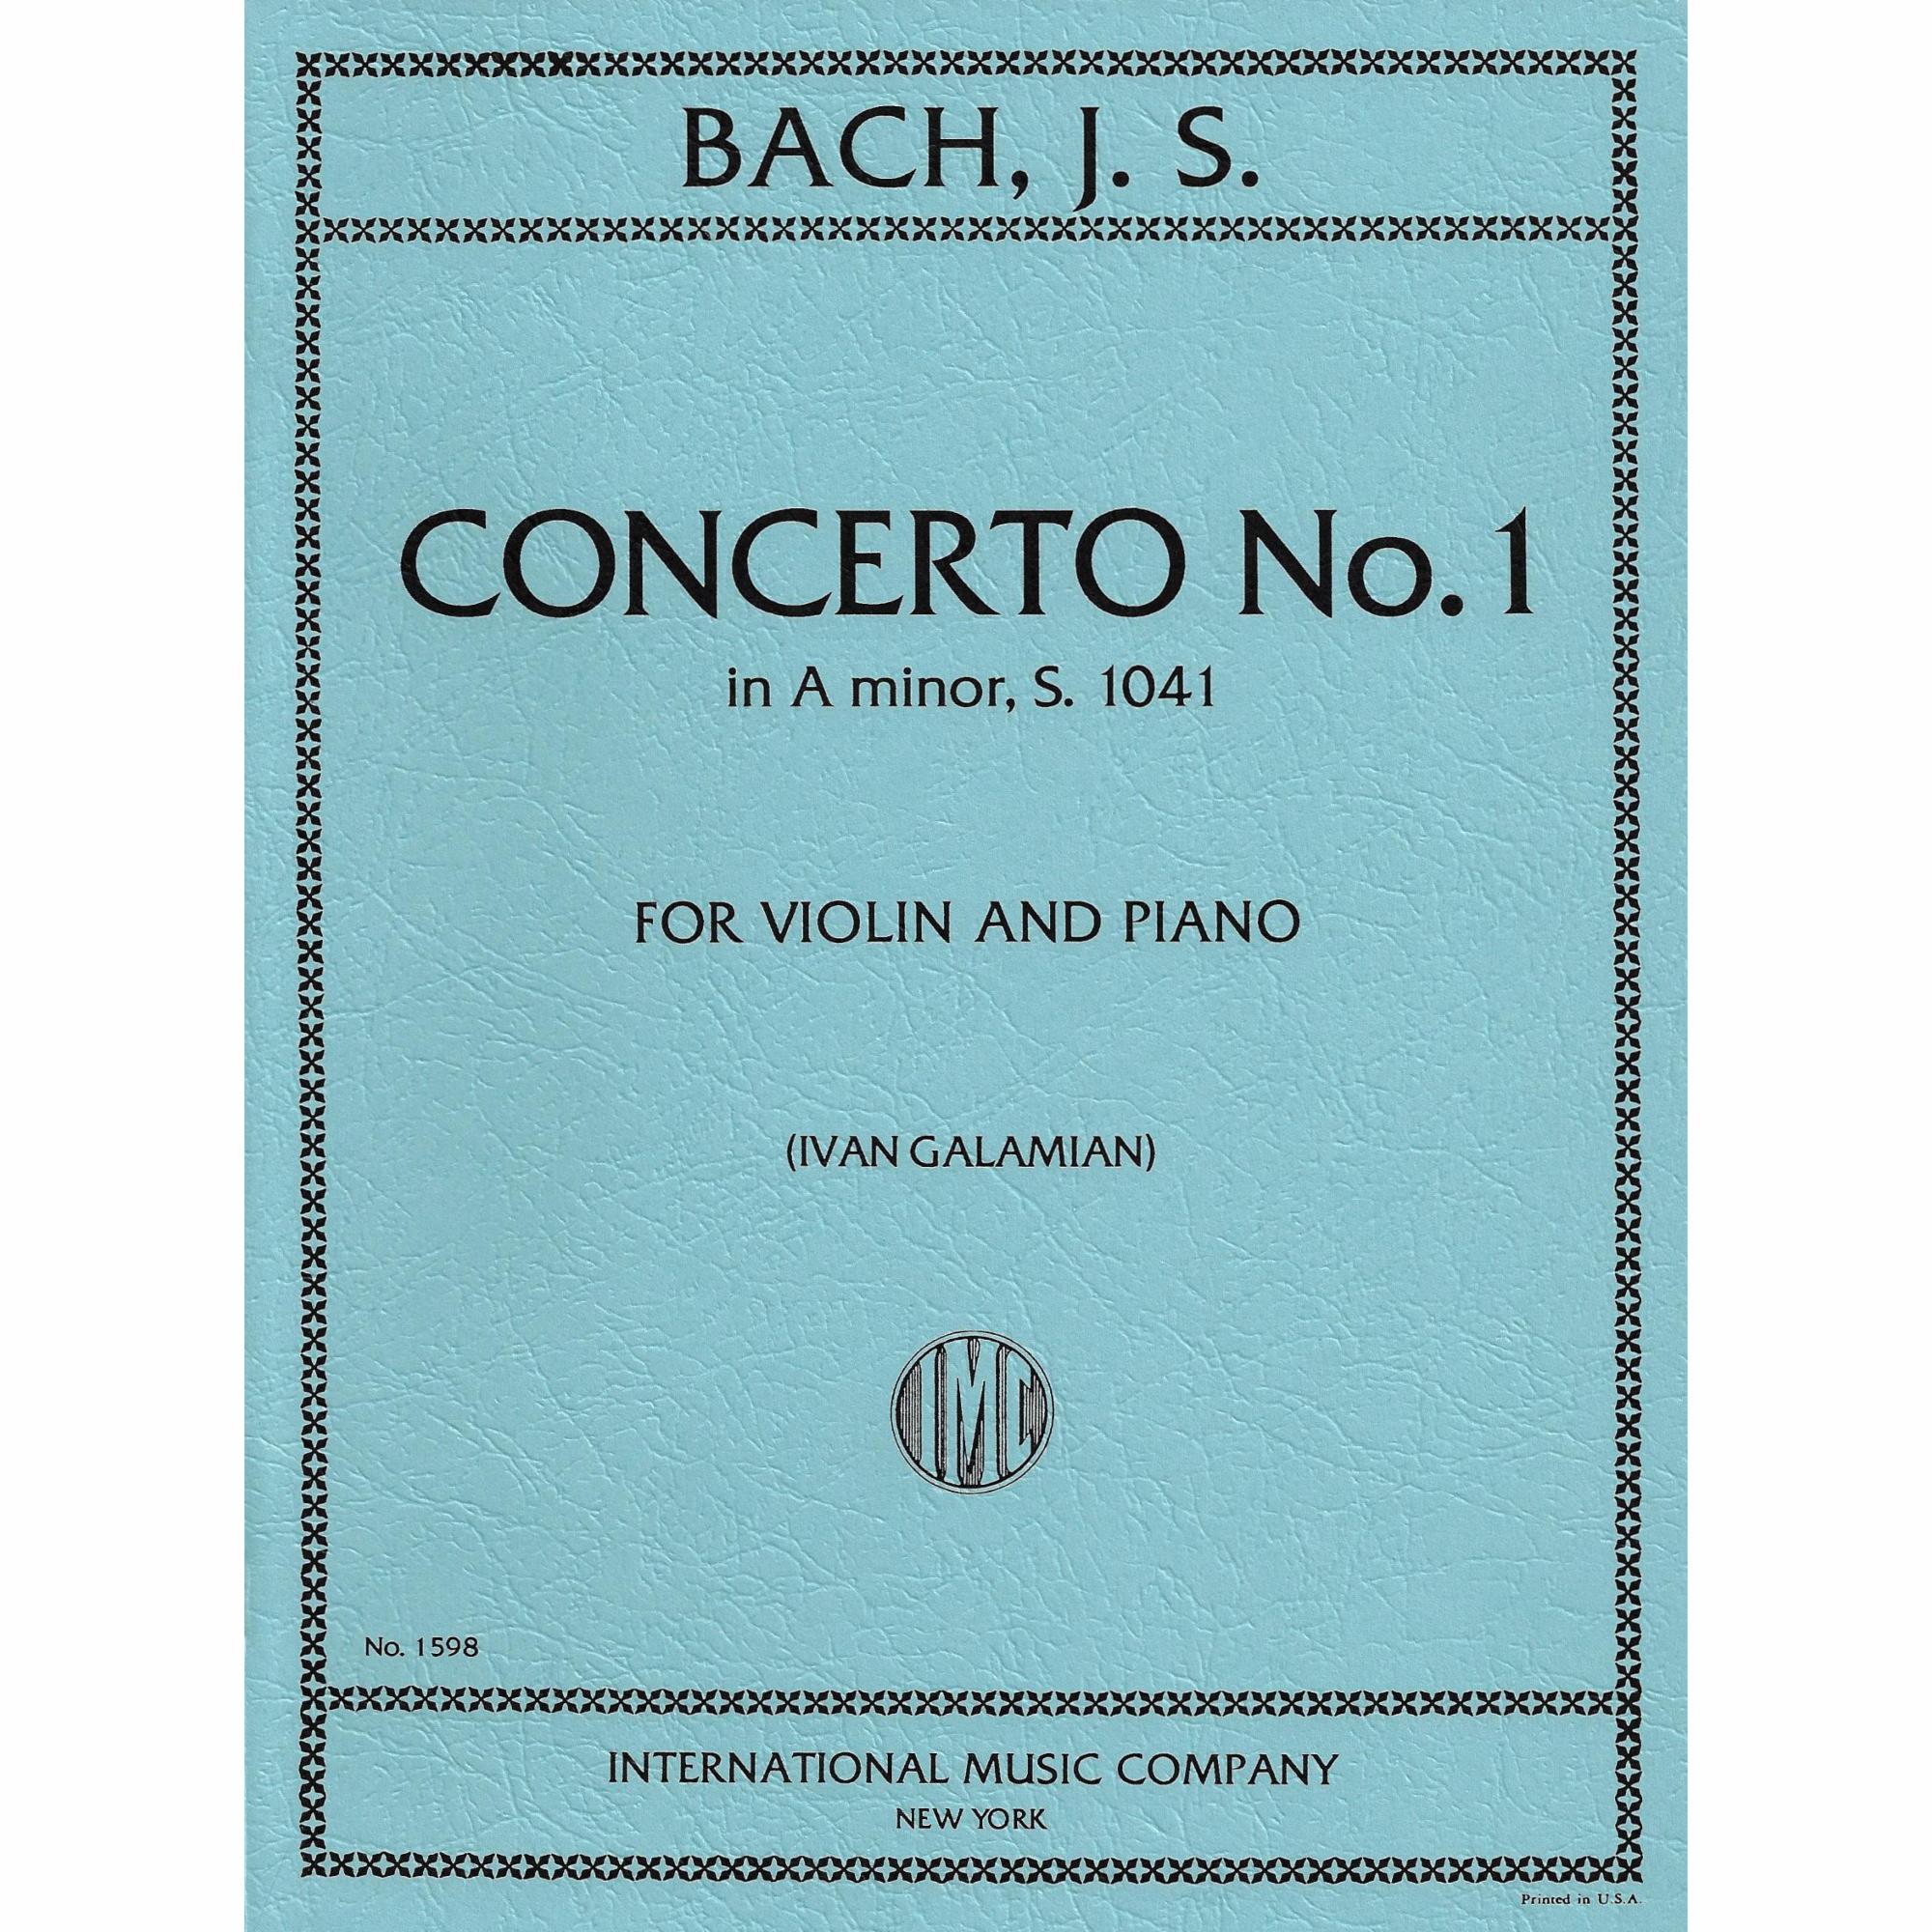 Bach -- Concerto No. 1 in A Minor, S. 1041 for Violin and Piano